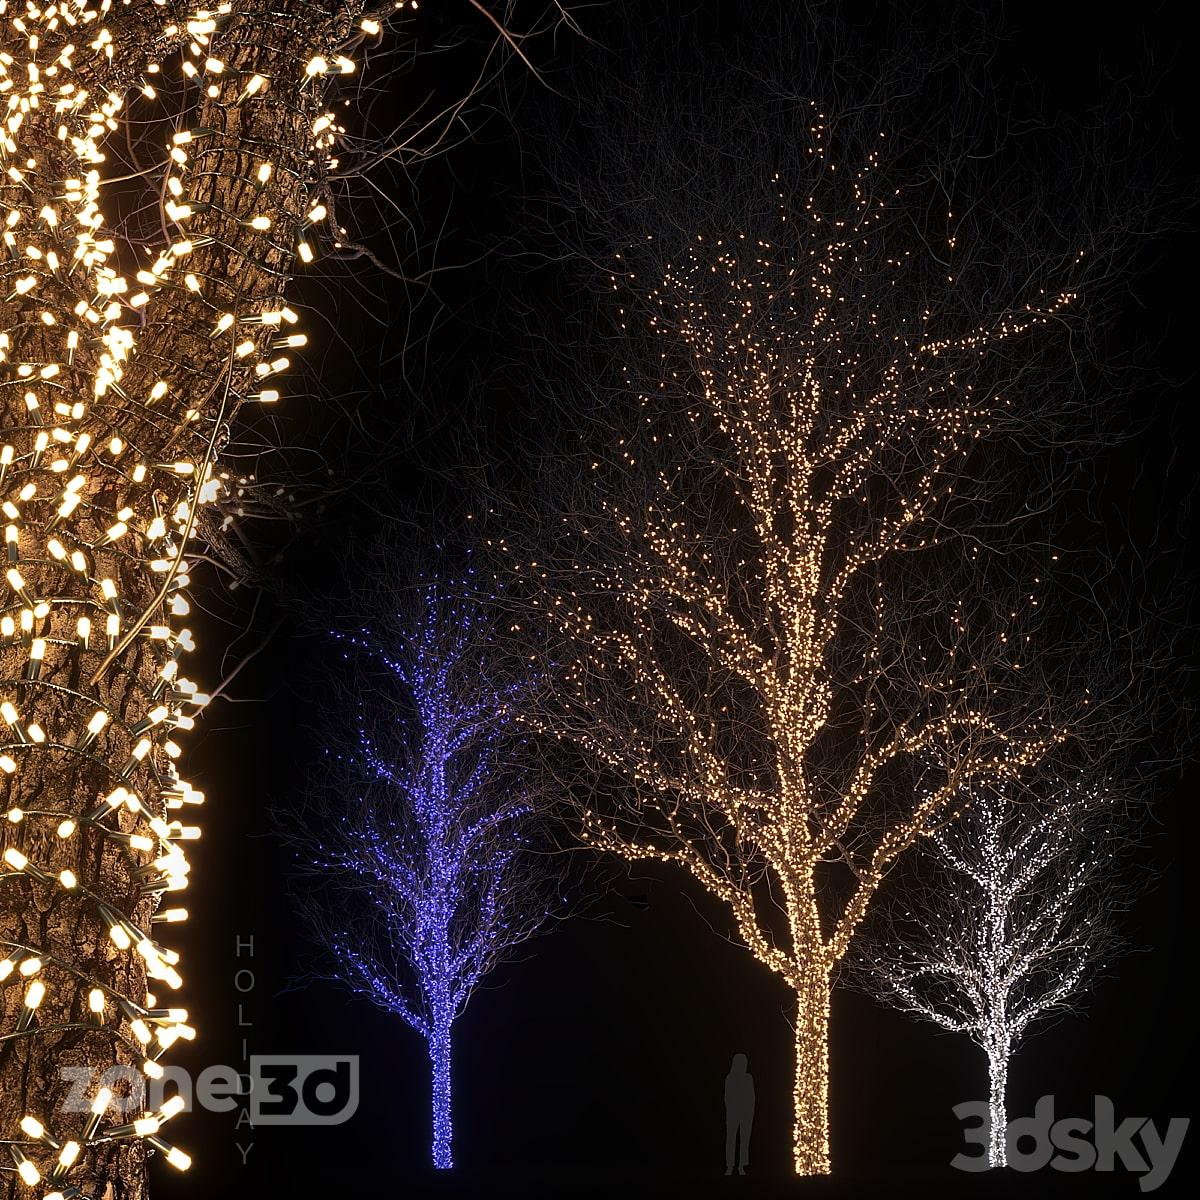 آبجکت ست درخت خشک سه عددی به همراه نورپردازی مدل Holiday glowing